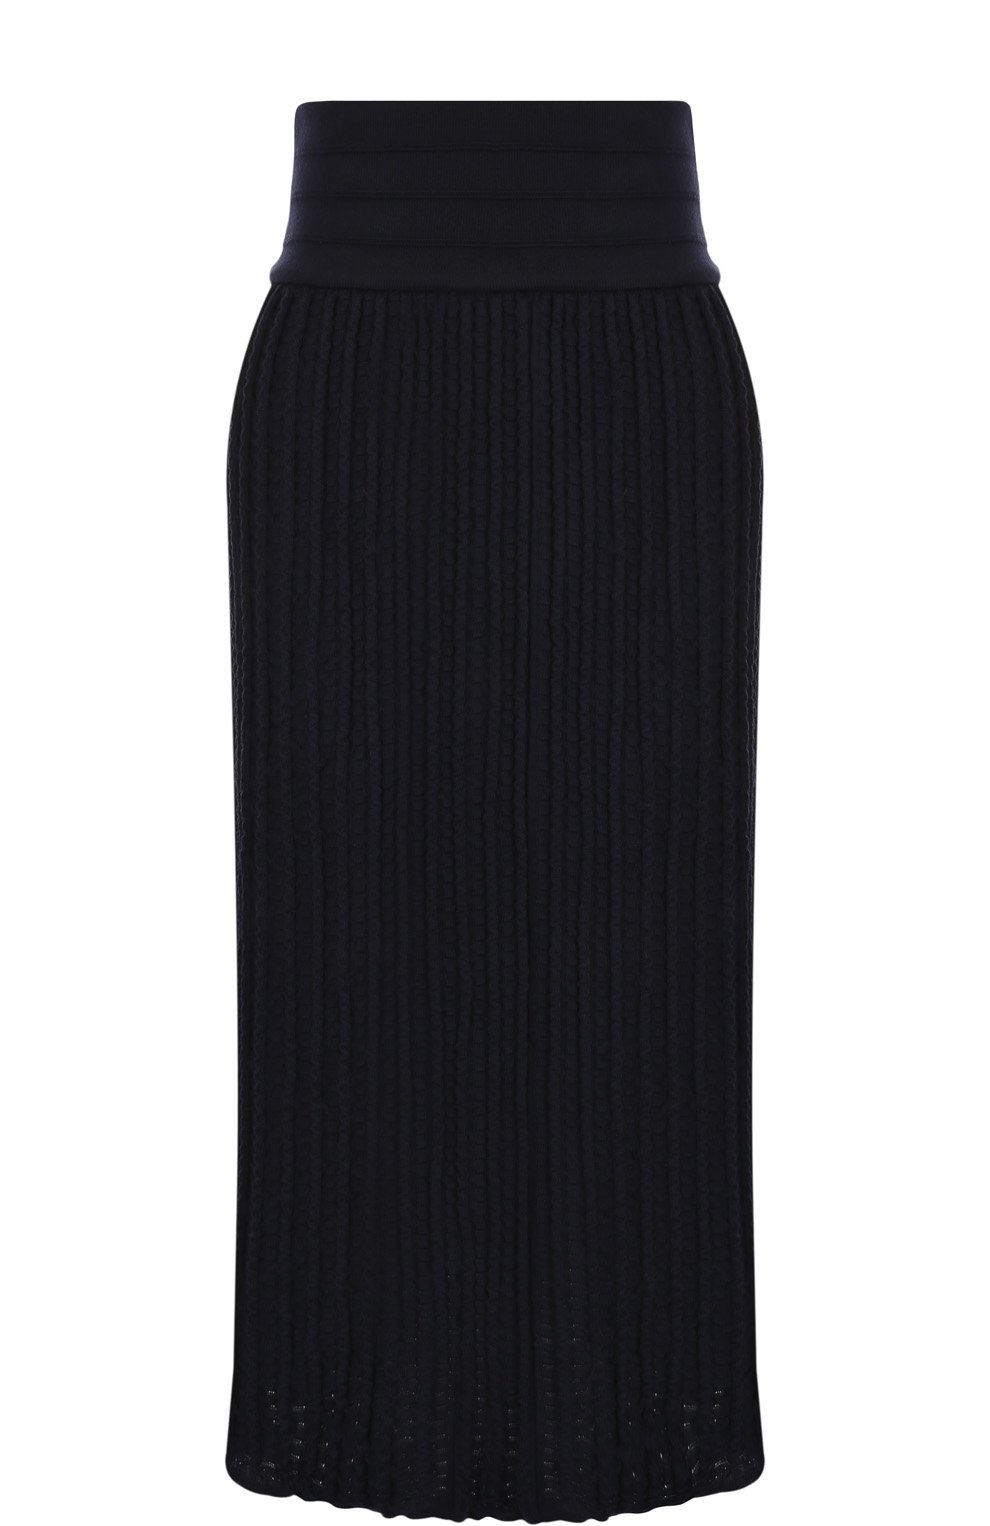 Шерстяная юбка-миди фактурной вязки с широким поясом Molli